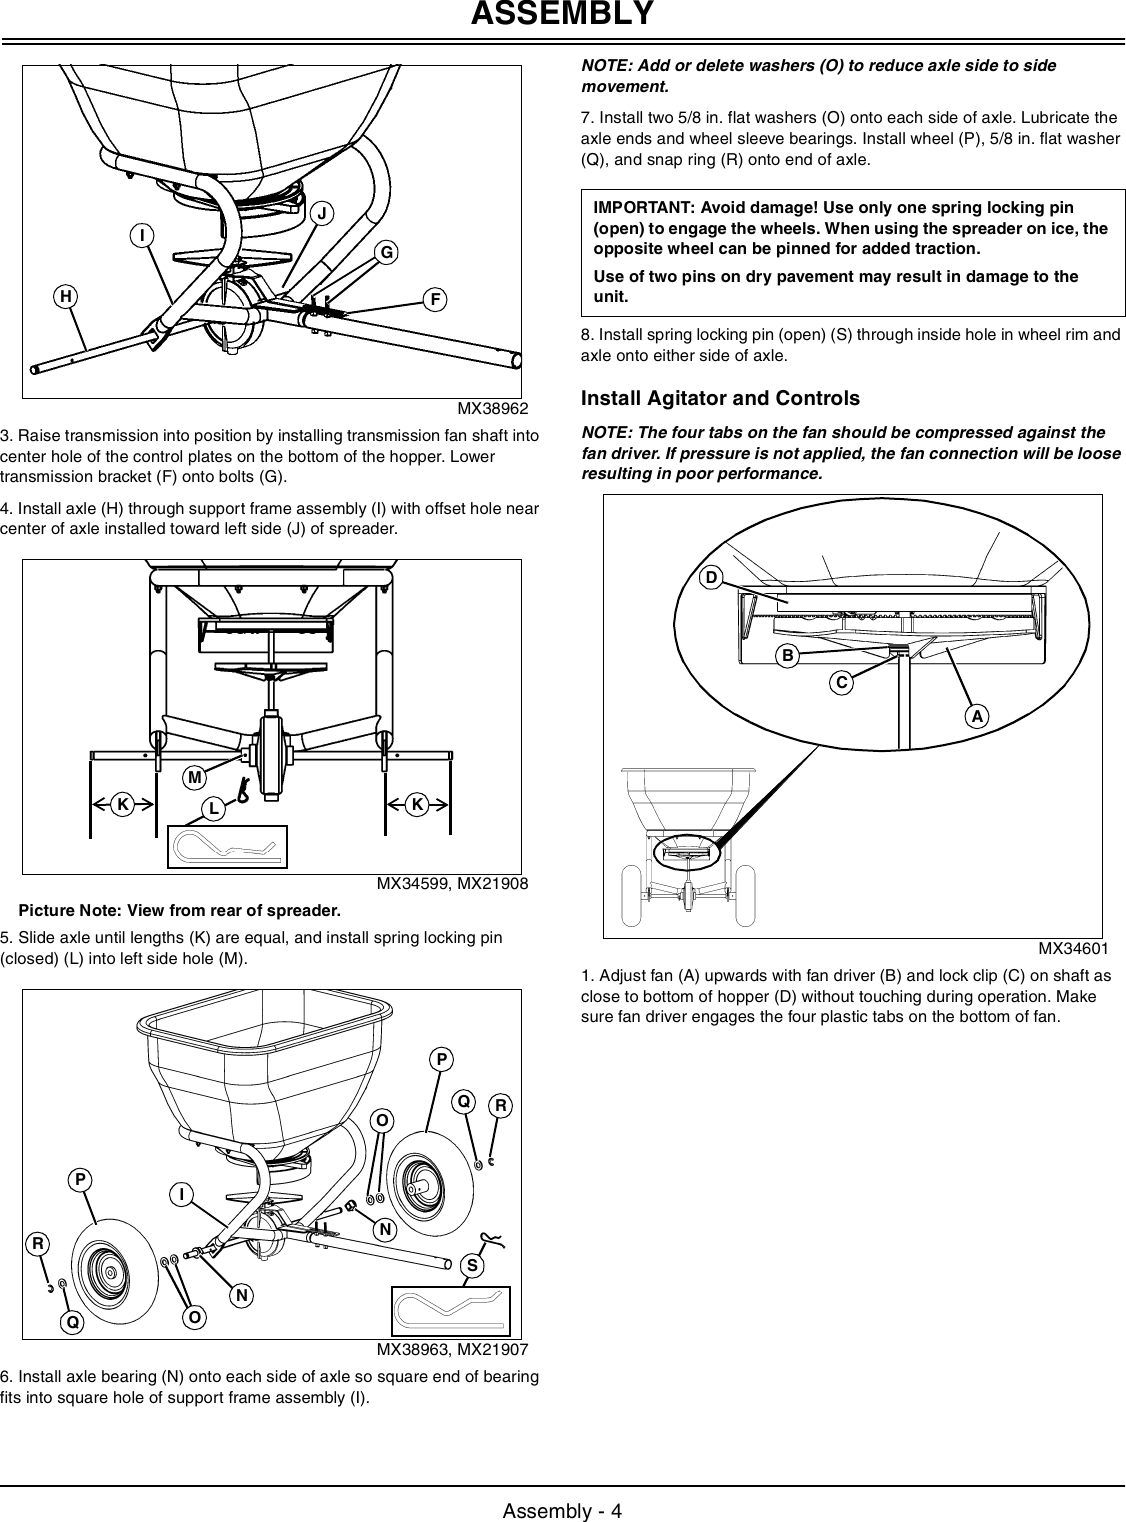 Page 5 of 12 - John-Deere John-Deere-Lpbst-35Jd-Users-Manual-  John-deere-lpbst-35jd-users-manual